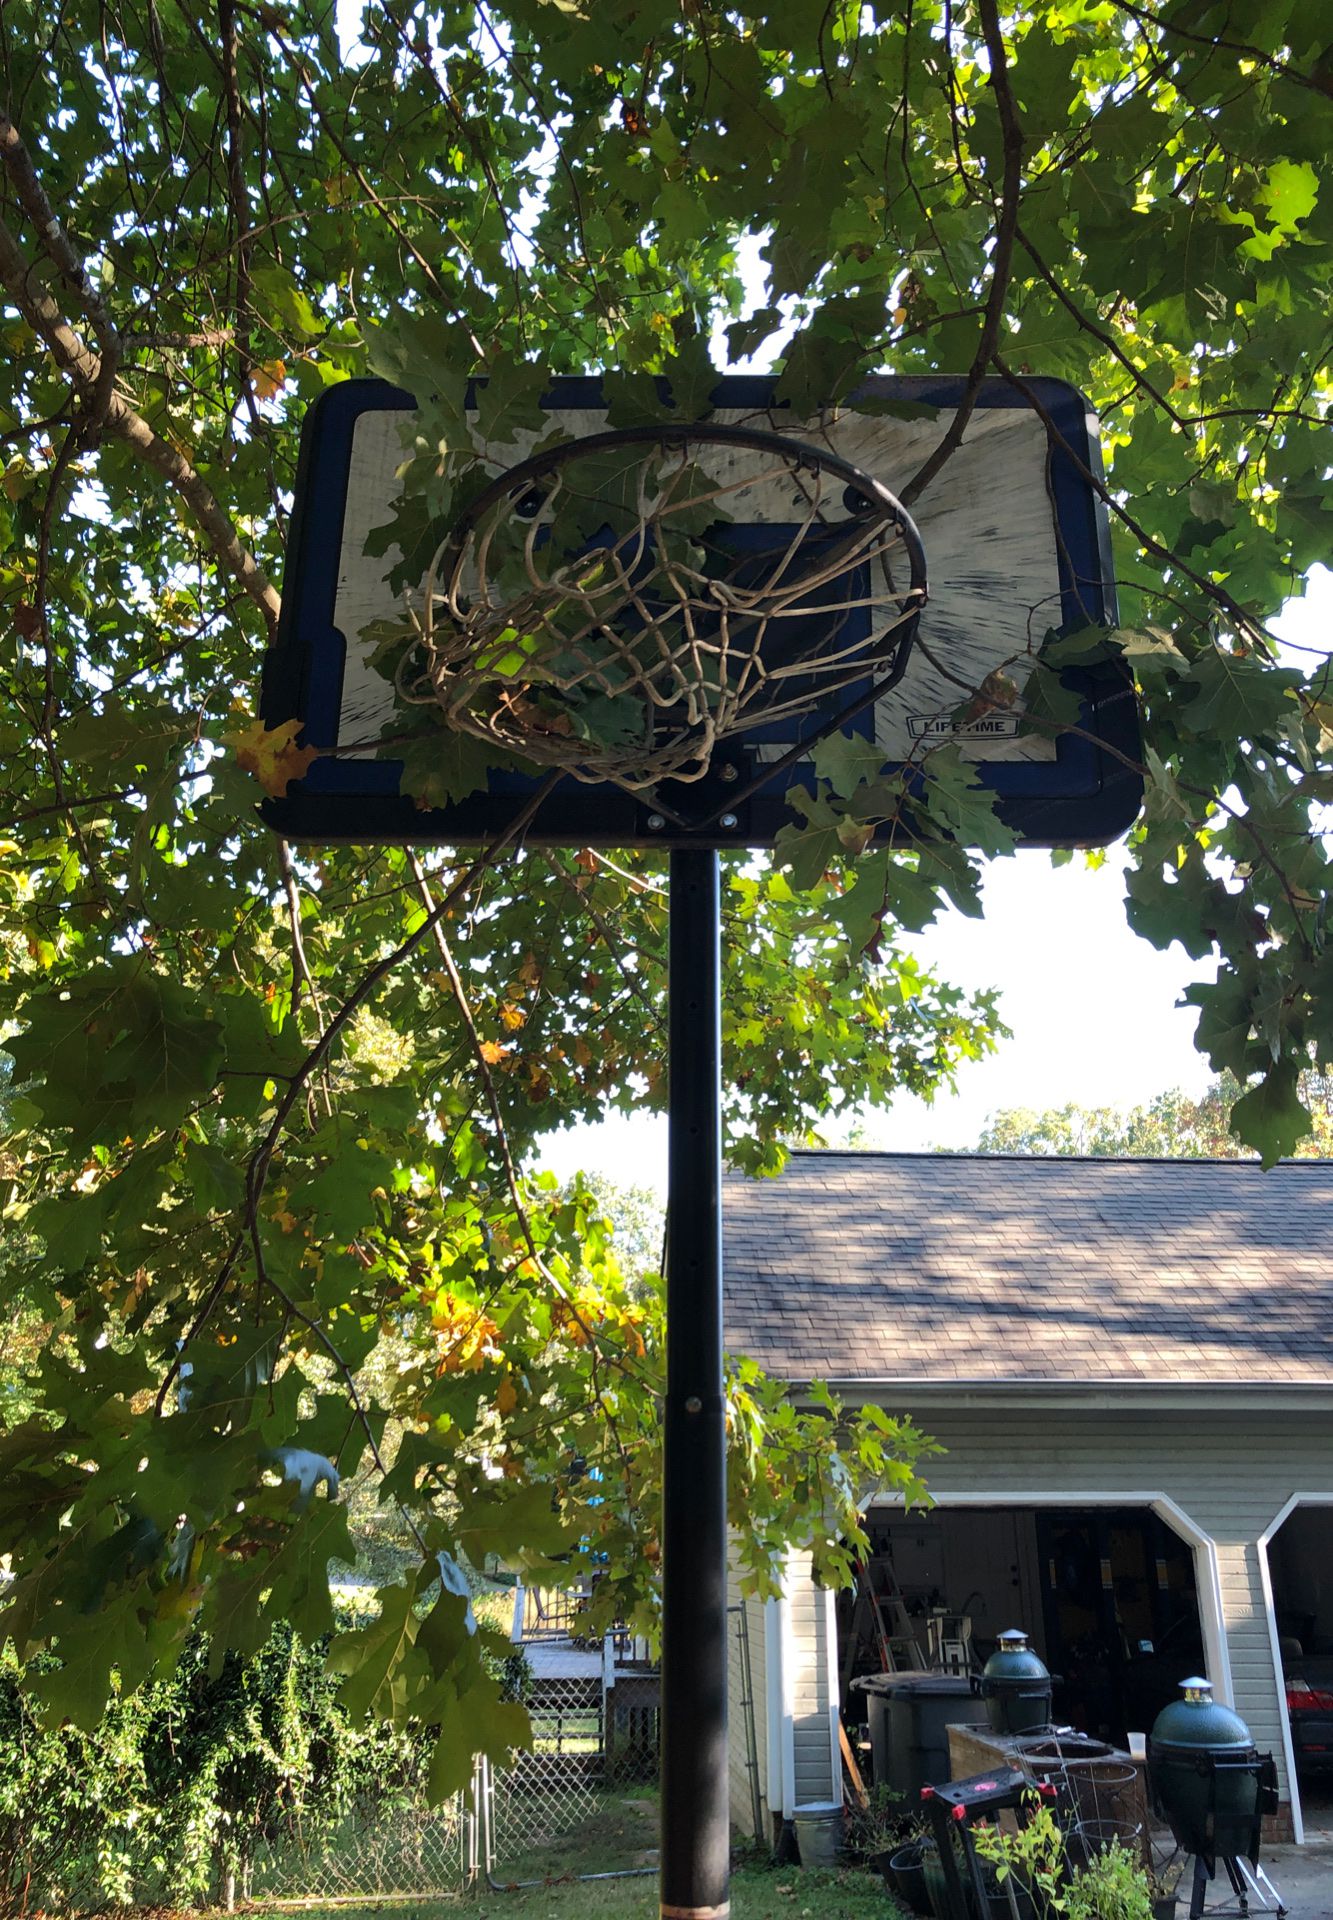 Portable adjustable basketball goal.